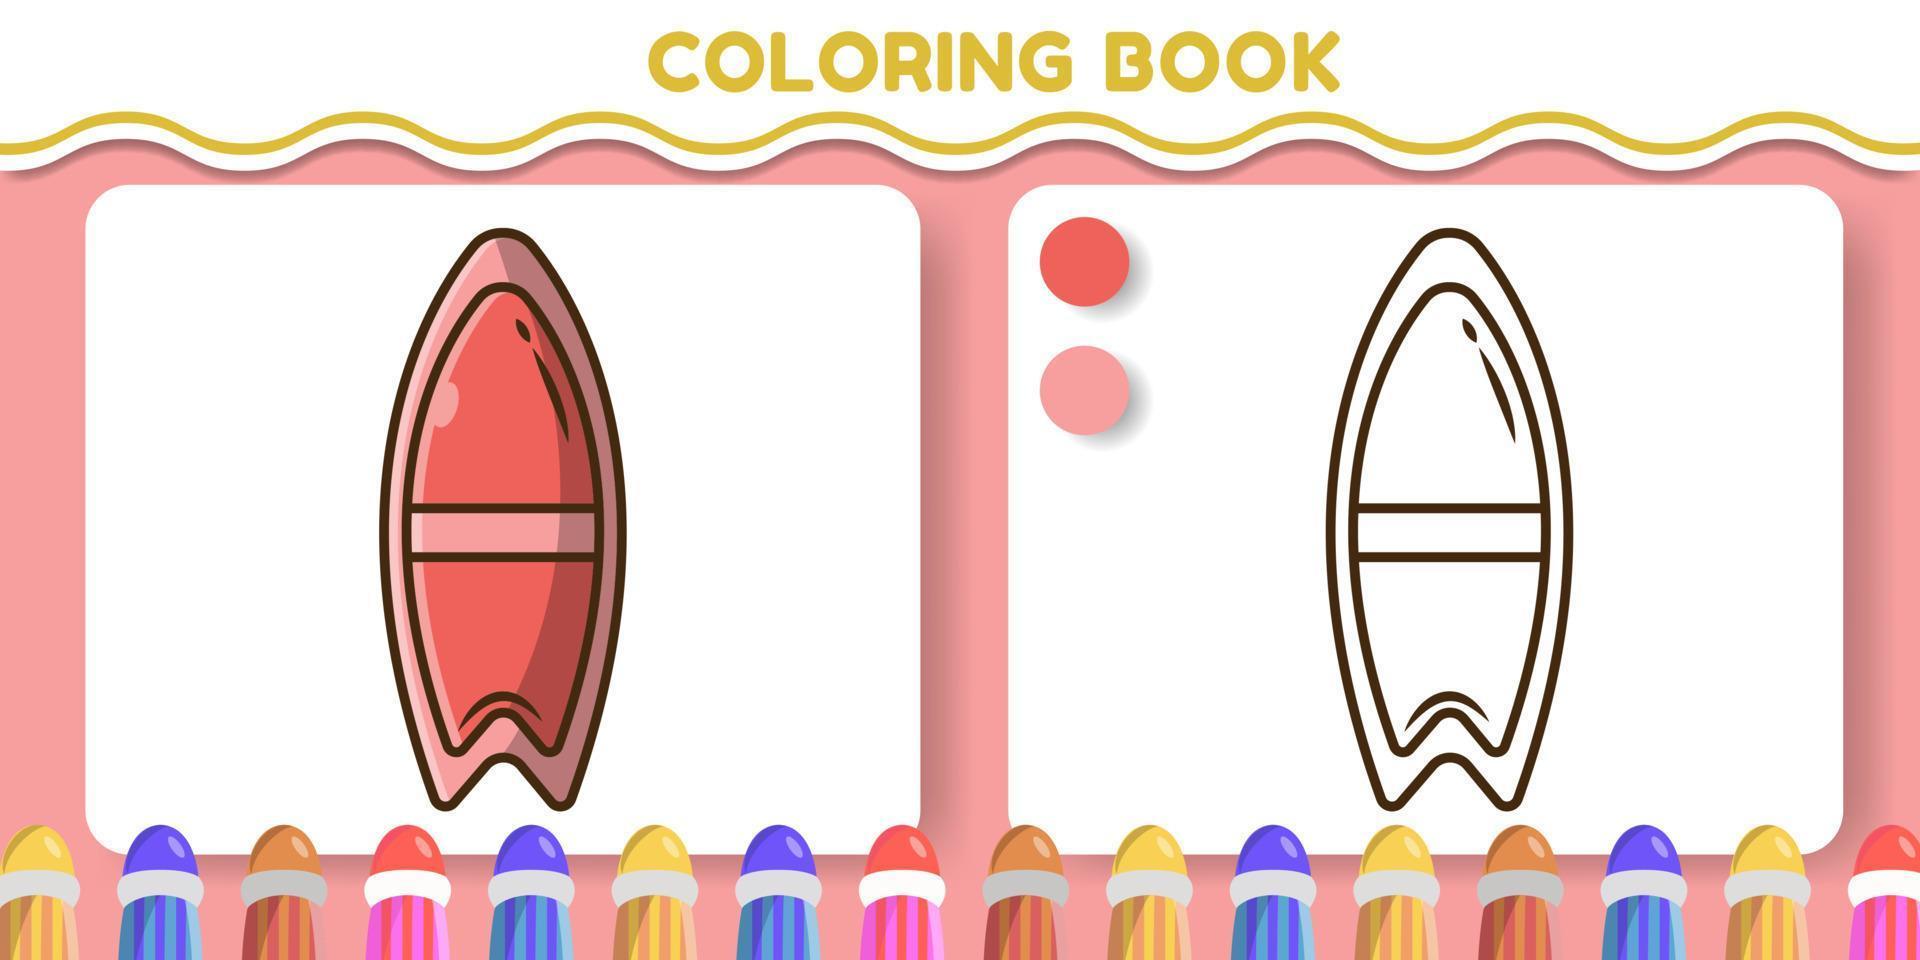 livre de coloriage de doodle de dessin animé dessiné à la main de planche de surf mignon pour les enfants vecteur